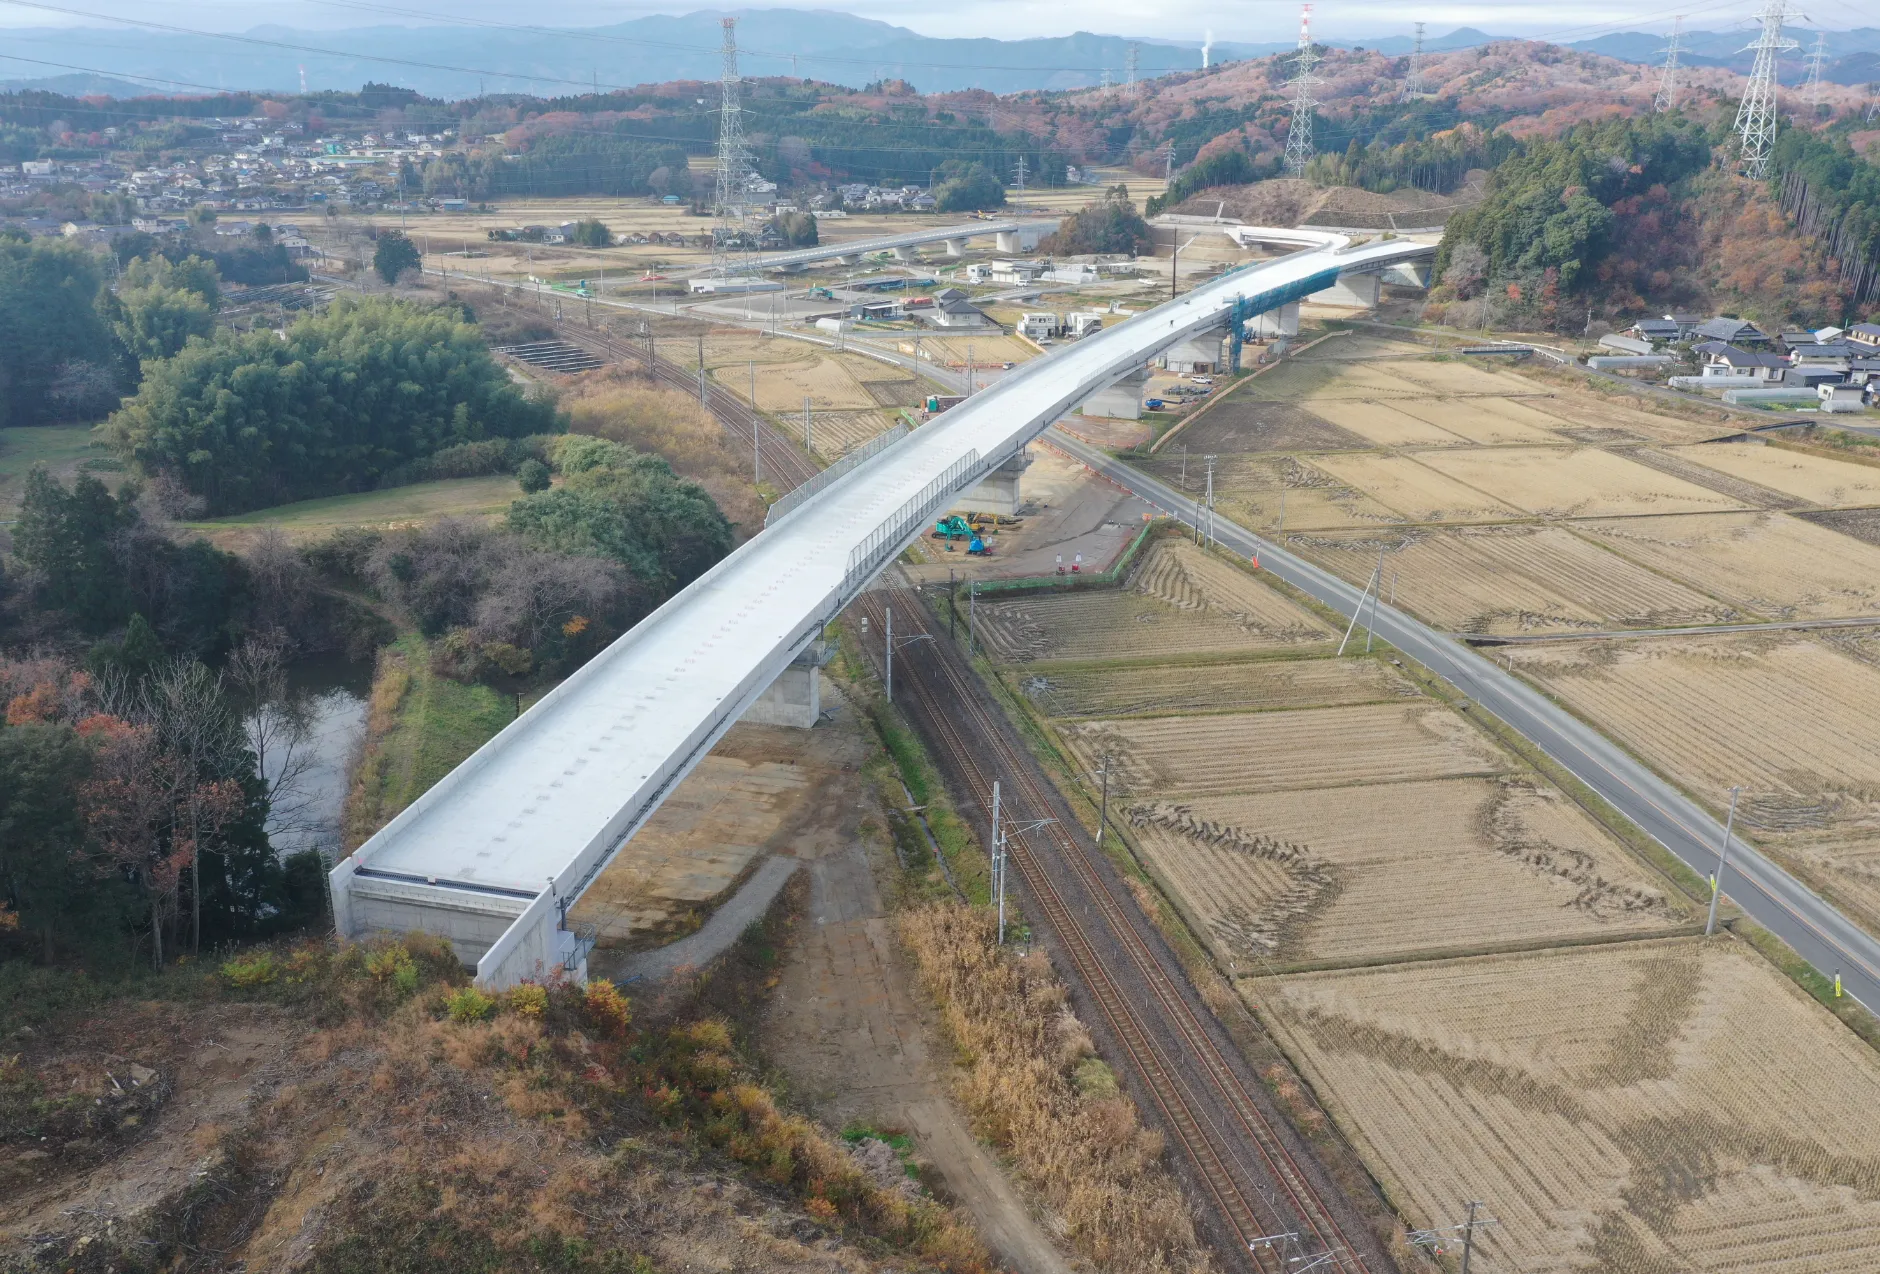 JR常磐線 植田・泉間小名浜こ線道路橋新設工事のサムネイル画像です